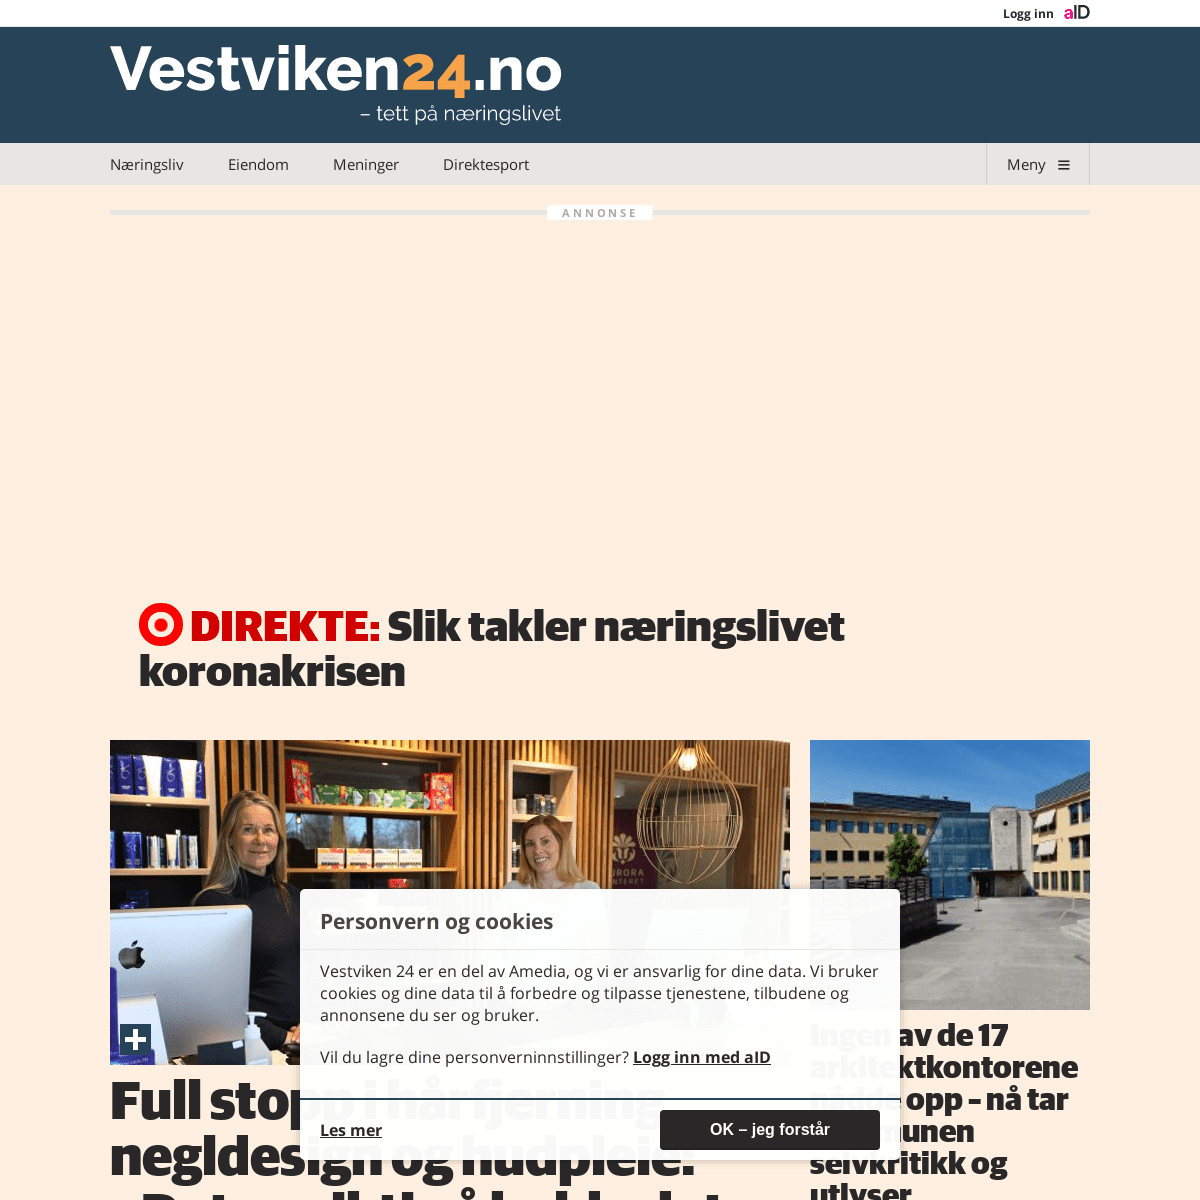 A complete backup of vestviken24.no